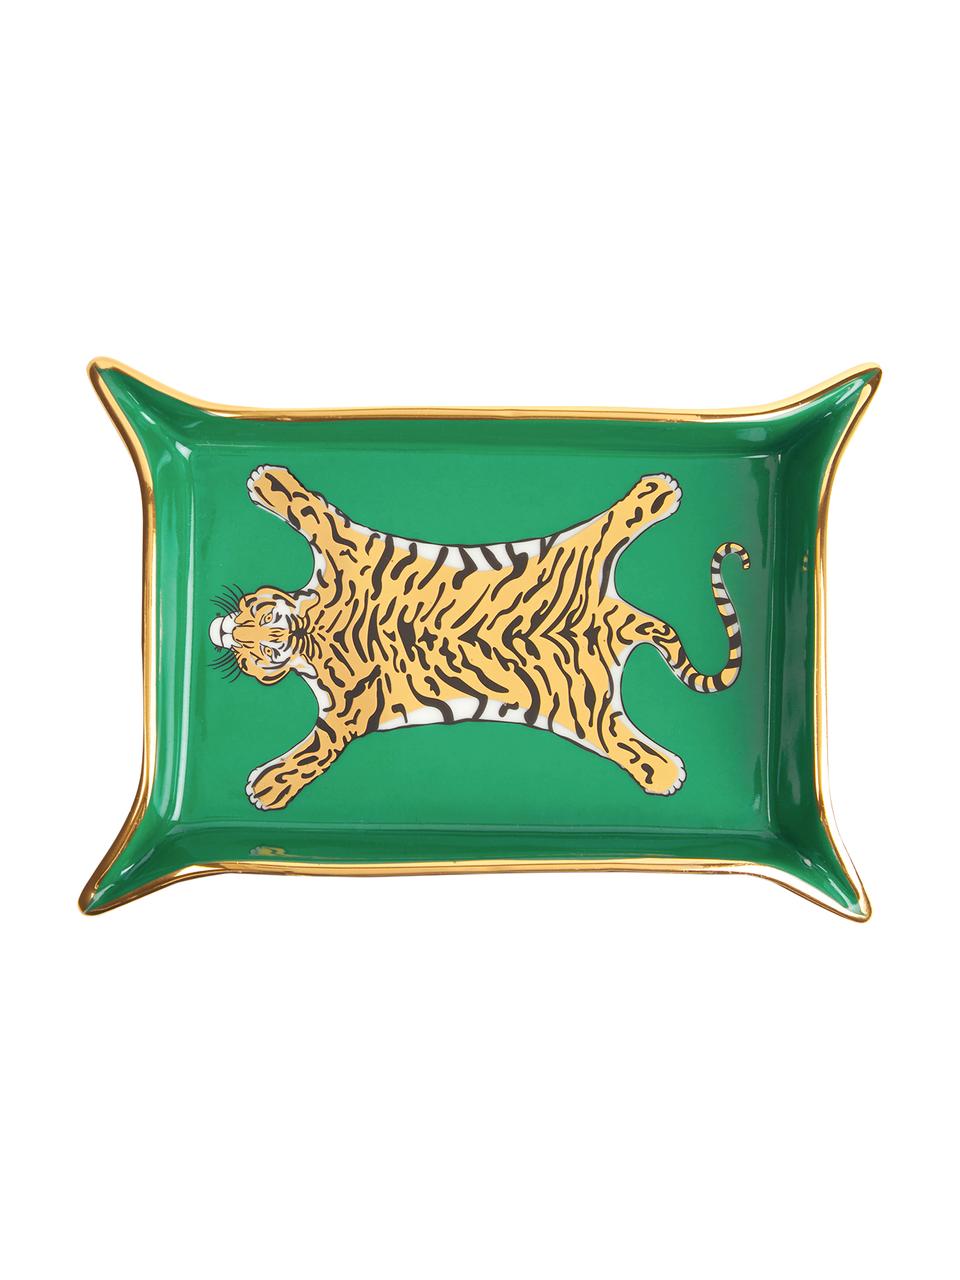 Coupelle design Tiger, plaqué or, Porcelaine à détails dorés à l'or véritable, Intérieur : vert, or, tons beiges Extérieur : blanc, larg. 18 x prof. 13 cm